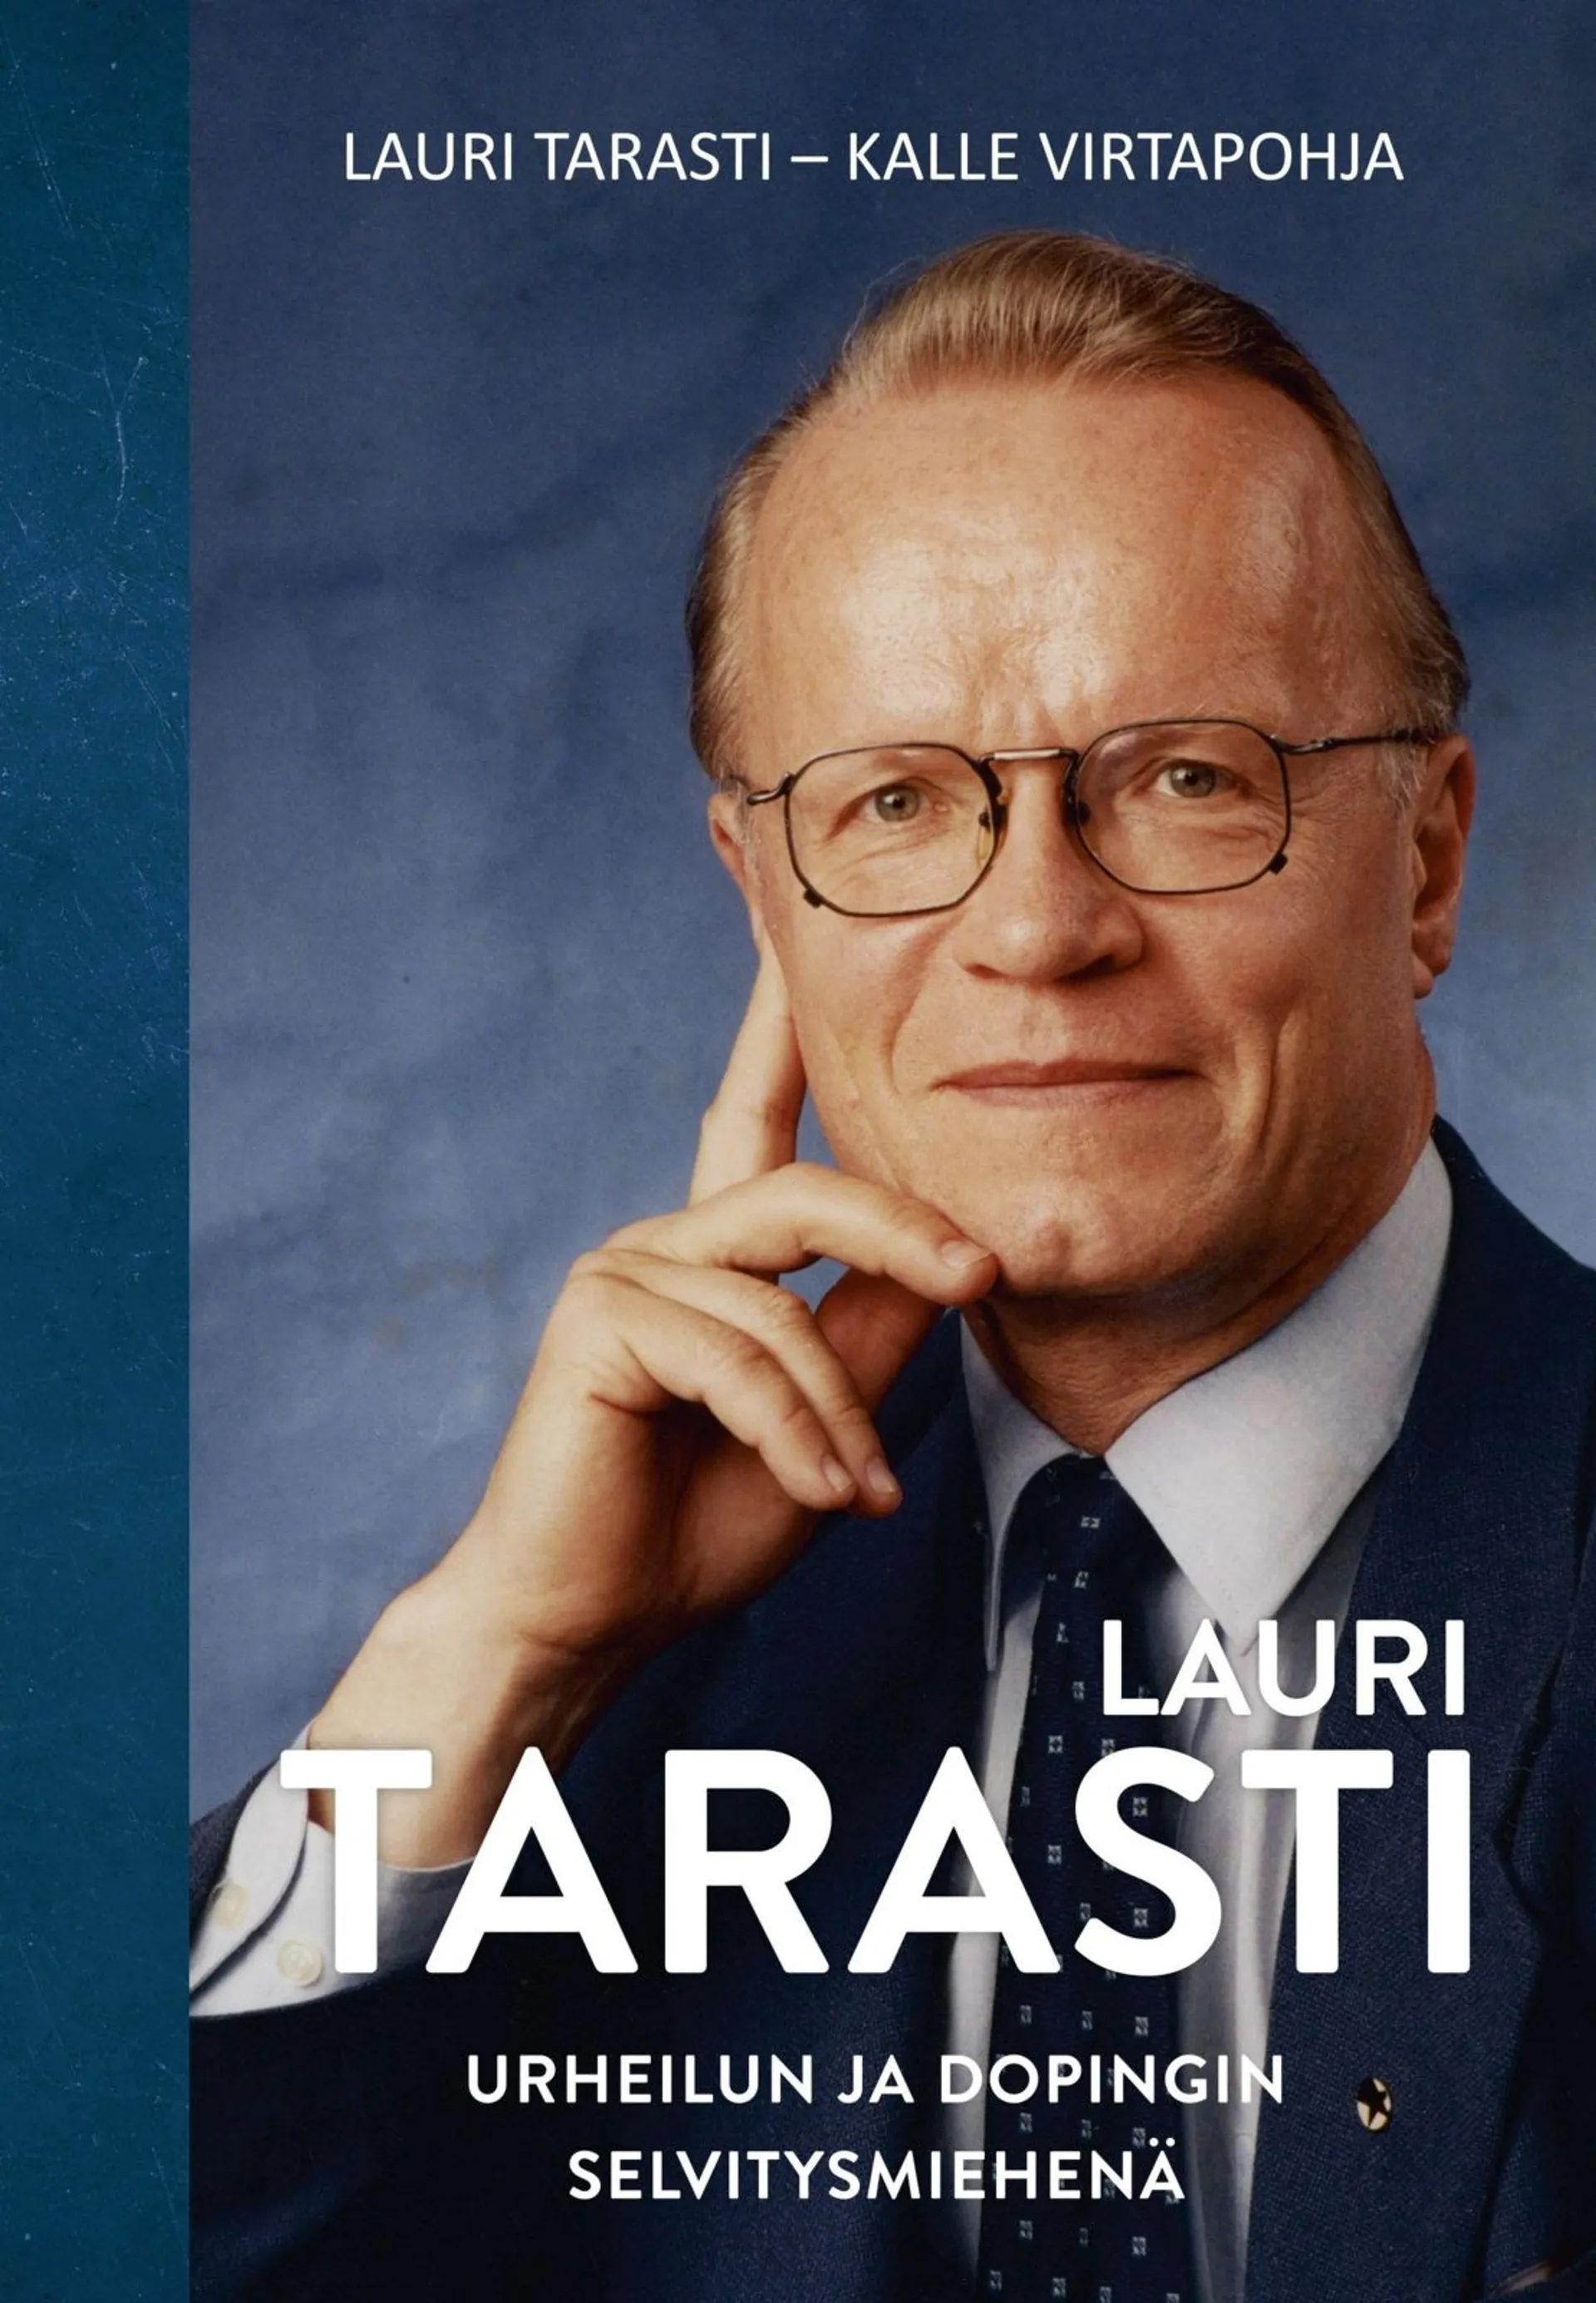 Virtapohja, Lauri Tarasti - Urheilun ja dopingin selvitysmiehenä